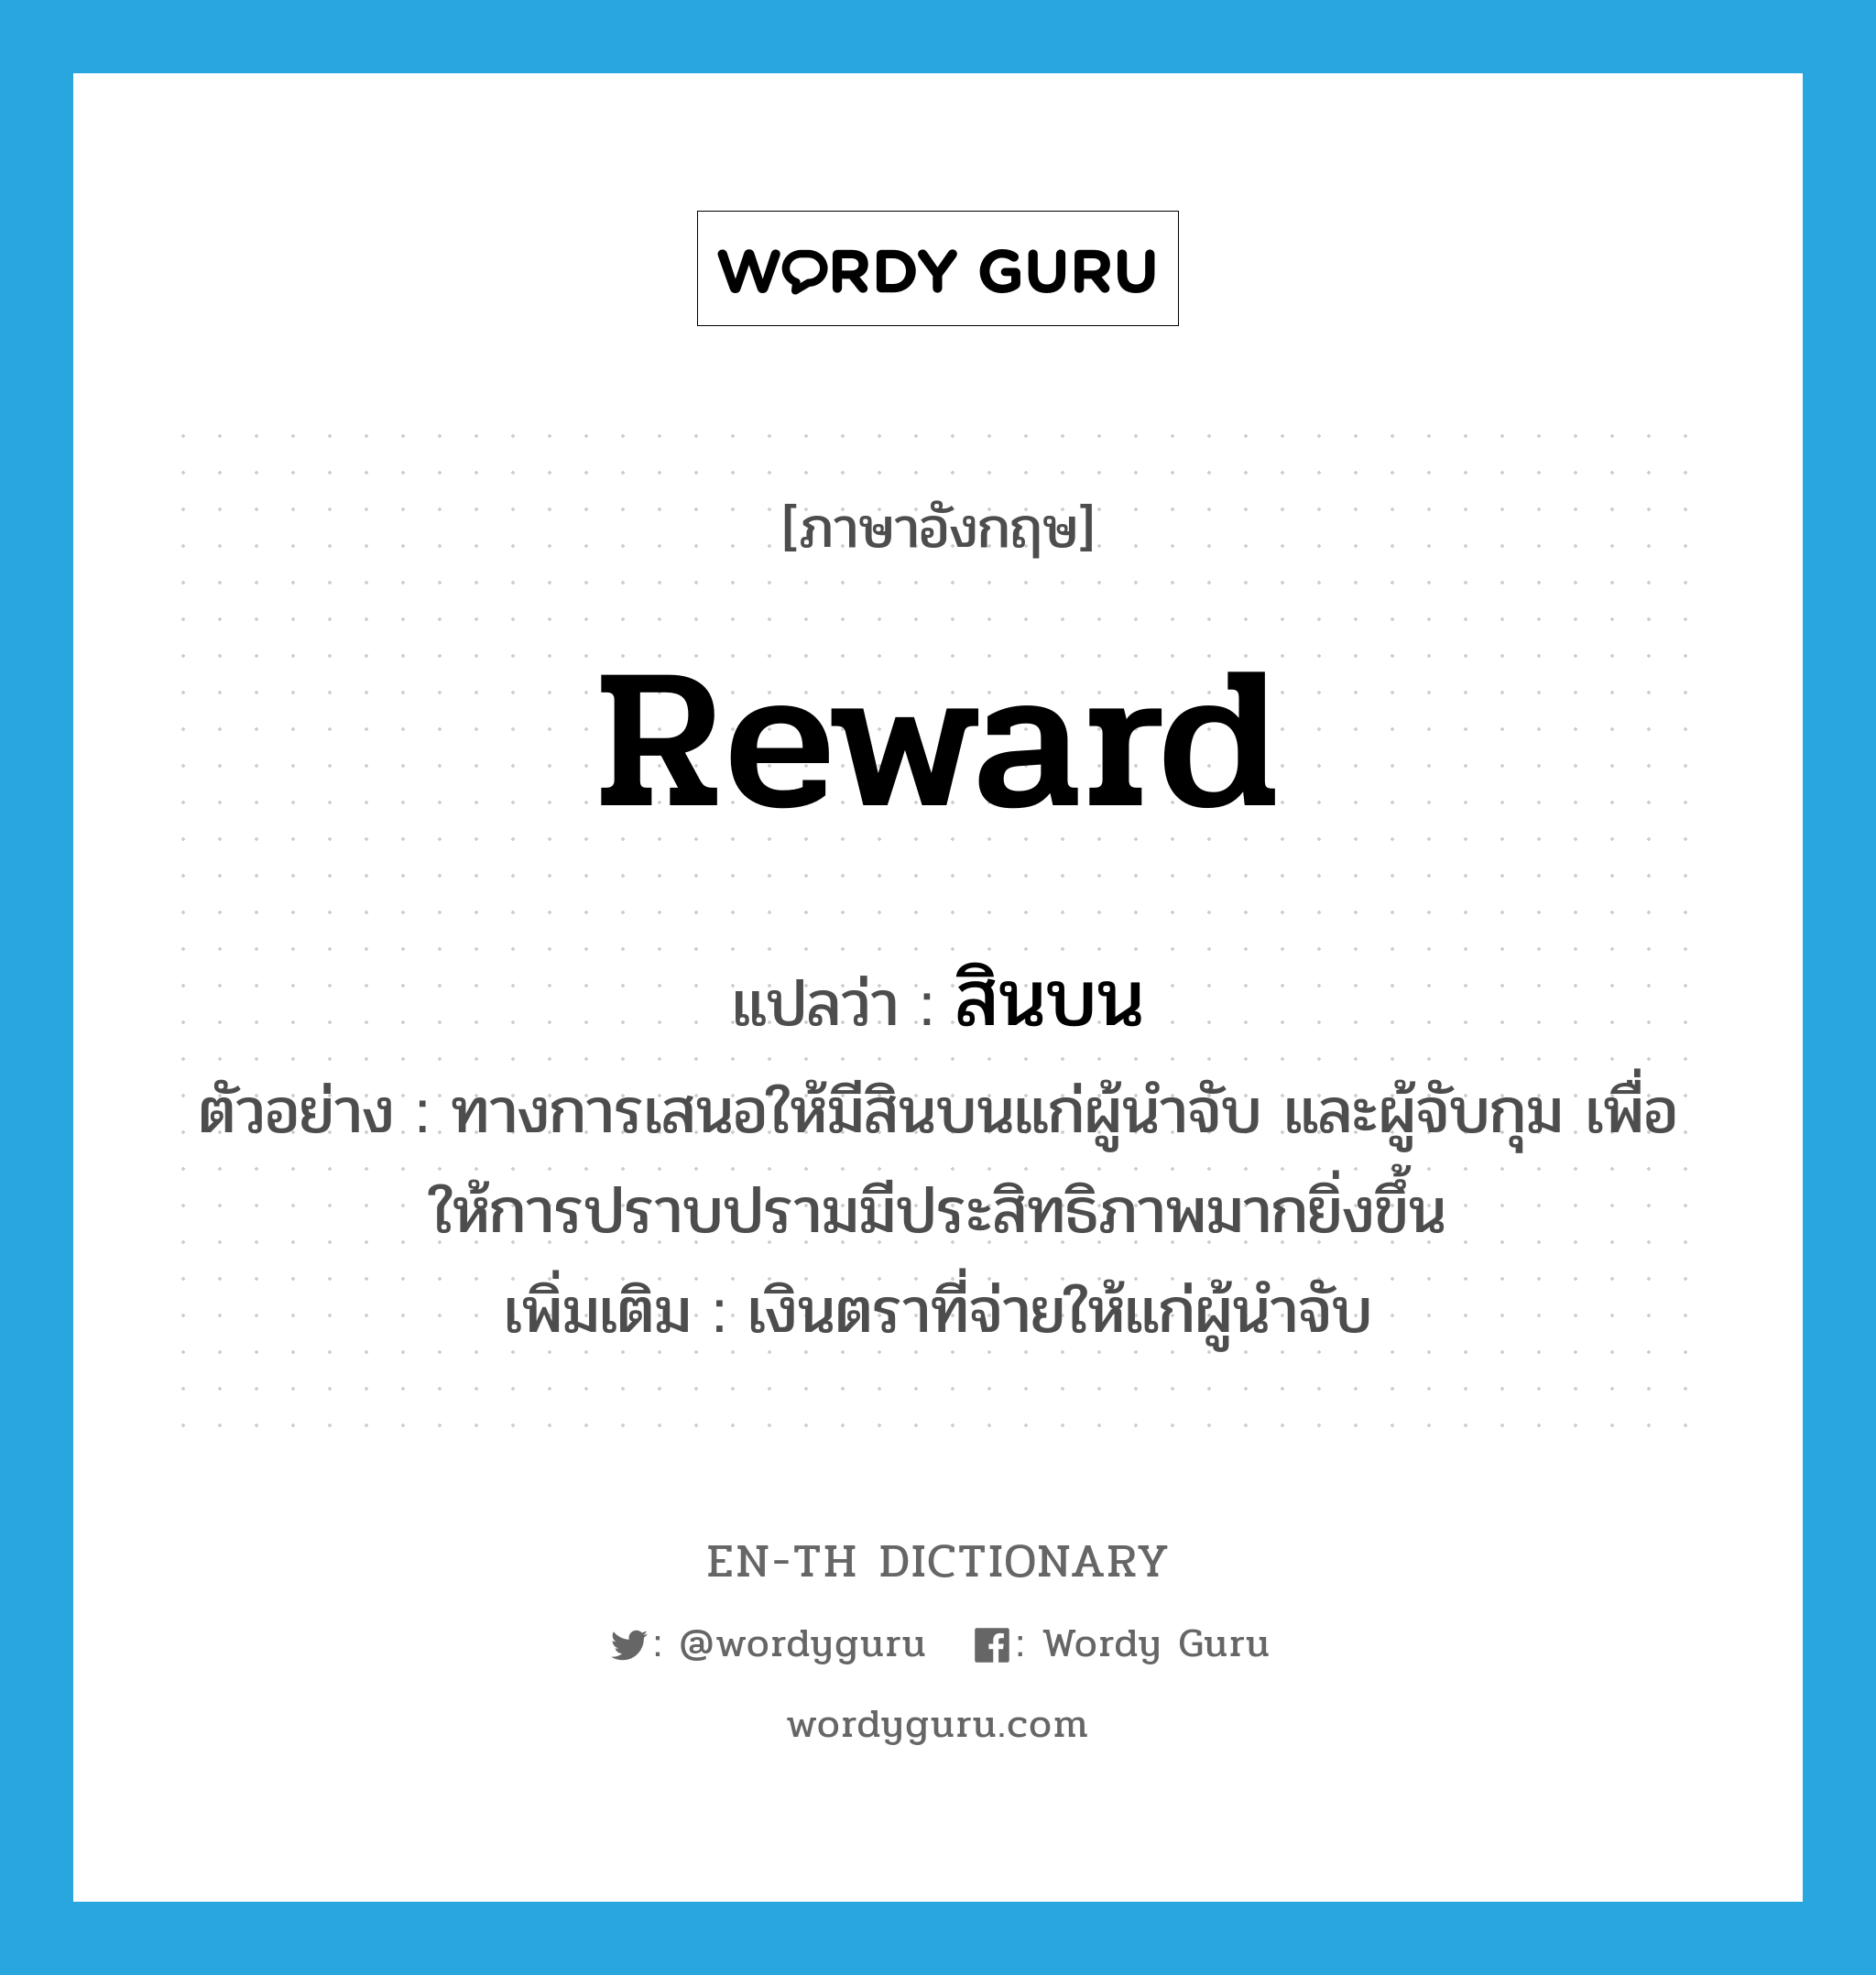 reward แปลว่า?, คำศัพท์ภาษาอังกฤษ reward แปลว่า สินบน ประเภท N ตัวอย่าง ทางการเสนอให้มีสินบนแก่ผู้นำจับ และผู้จับกุม เพื่อให้การปราบปรามมีประสิทธิภาพมากยิ่งขึ้น เพิ่มเติม เงินตราที่จ่ายให้แก่ผู้นำจับ หมวด N